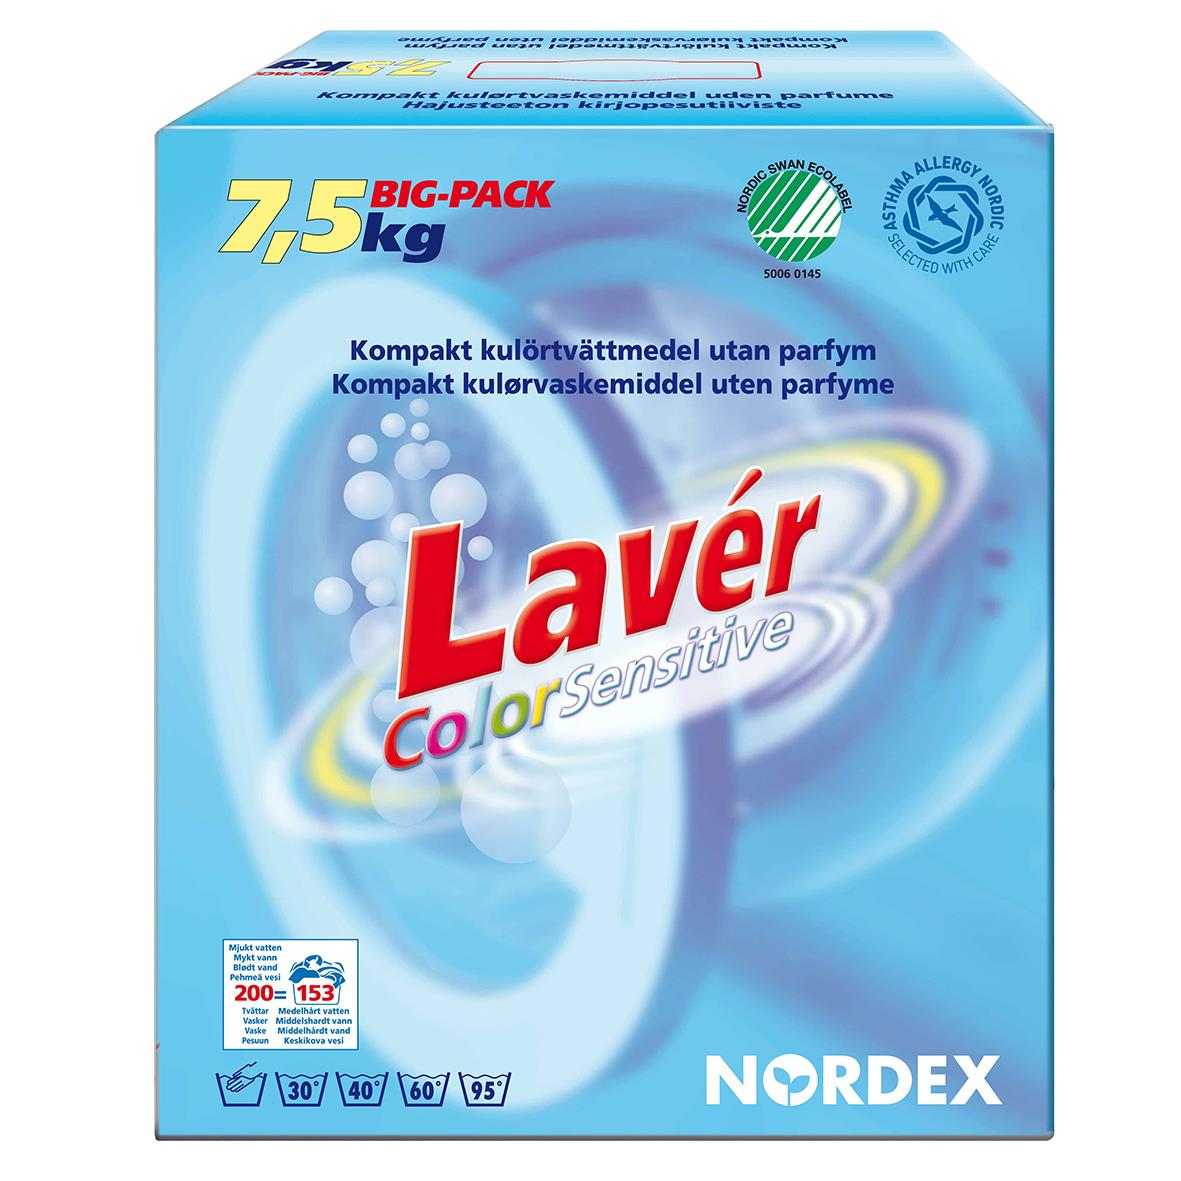 Tvättmedel Nordex Lavér Color Sensitive 7,5kg